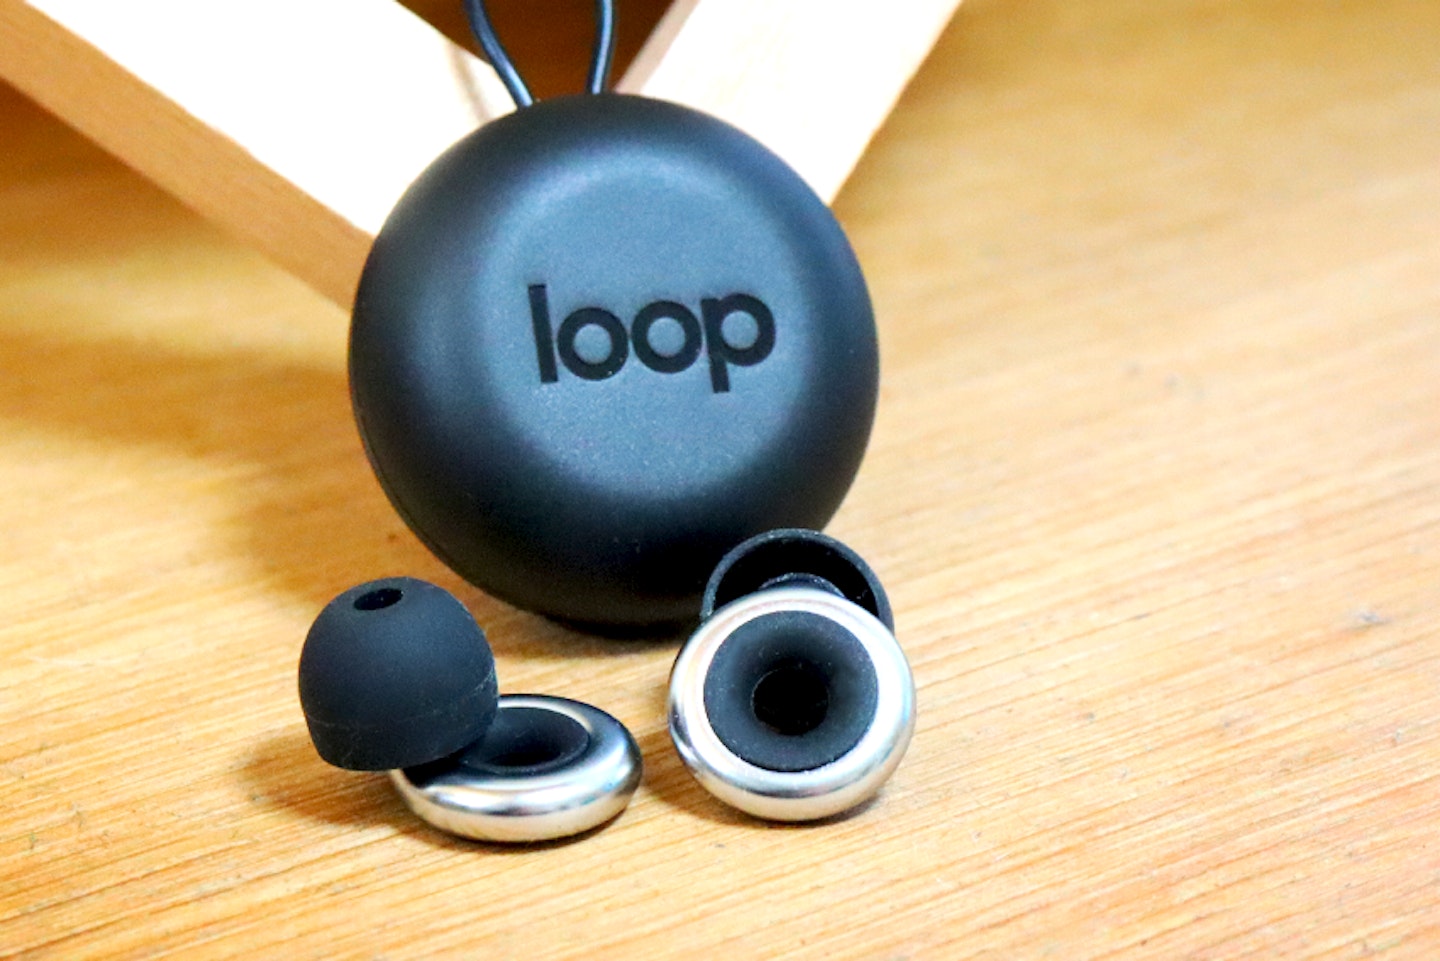  Loop: Loop Experience Plus